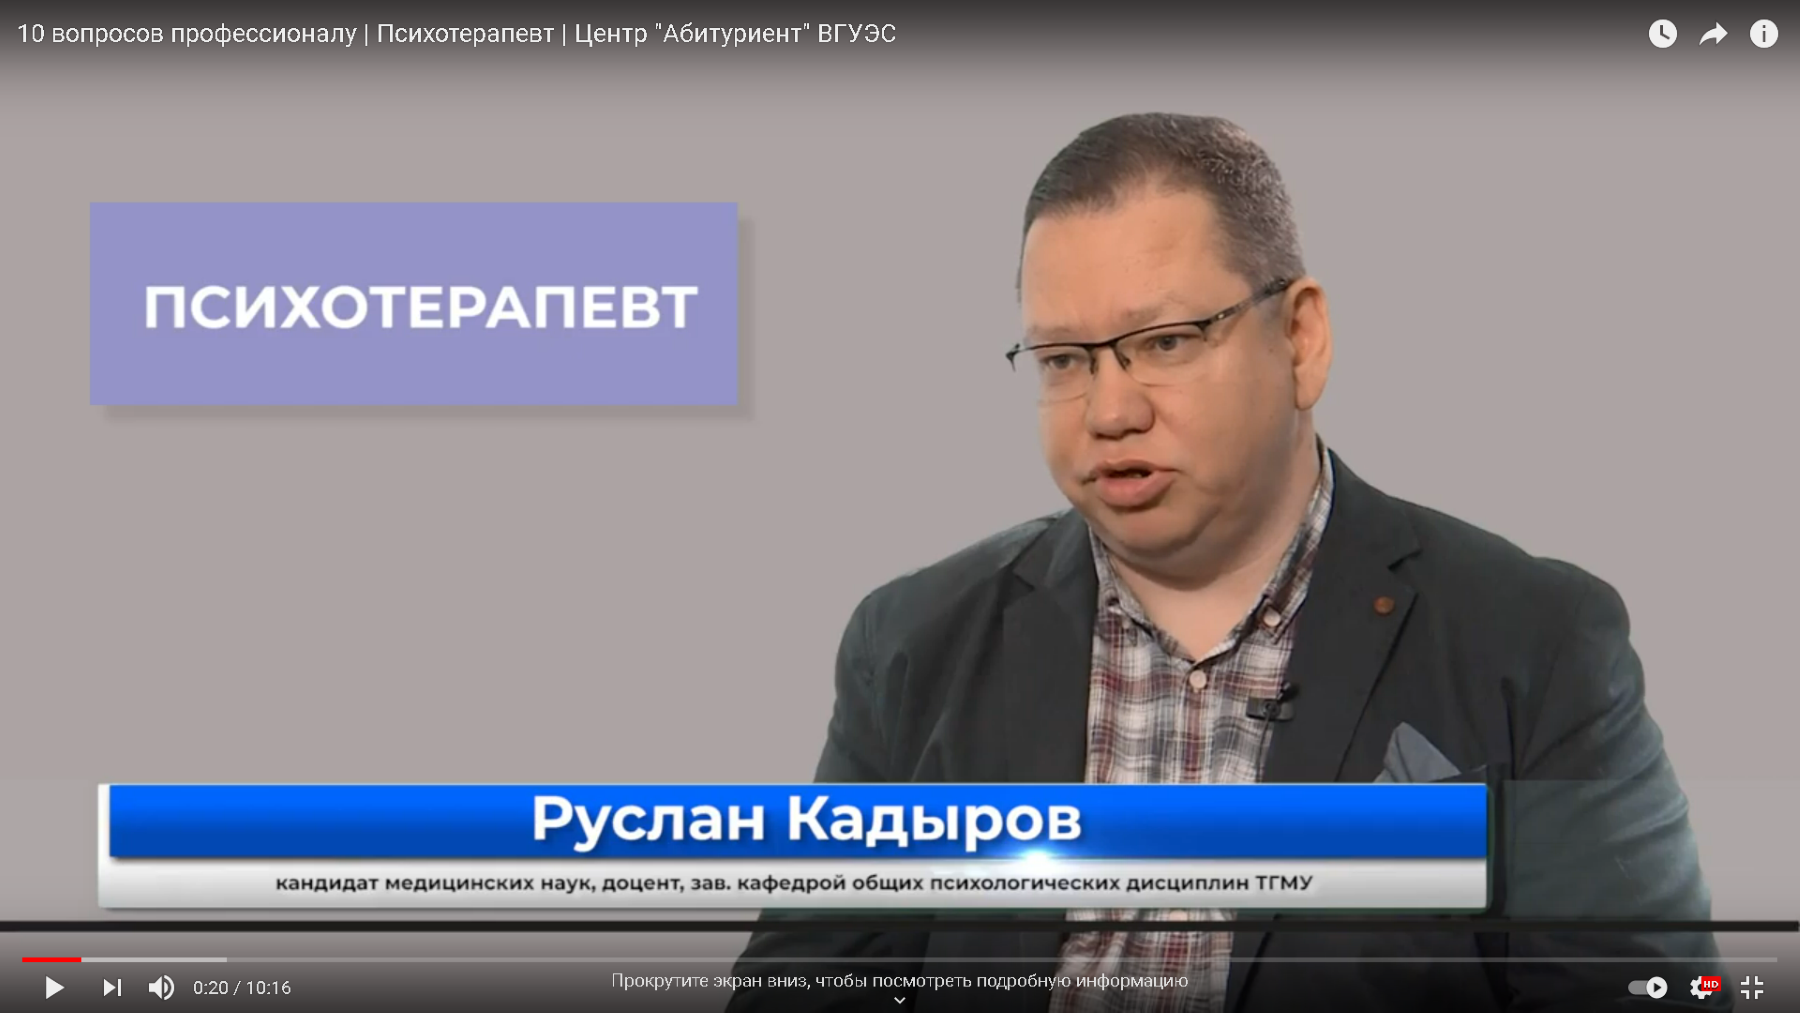 300,000 рублей в месяц — не предел, — практикующий психотерапевт Руслан Кадыров отвечает на вопросы абитуриентов ВГУЭС